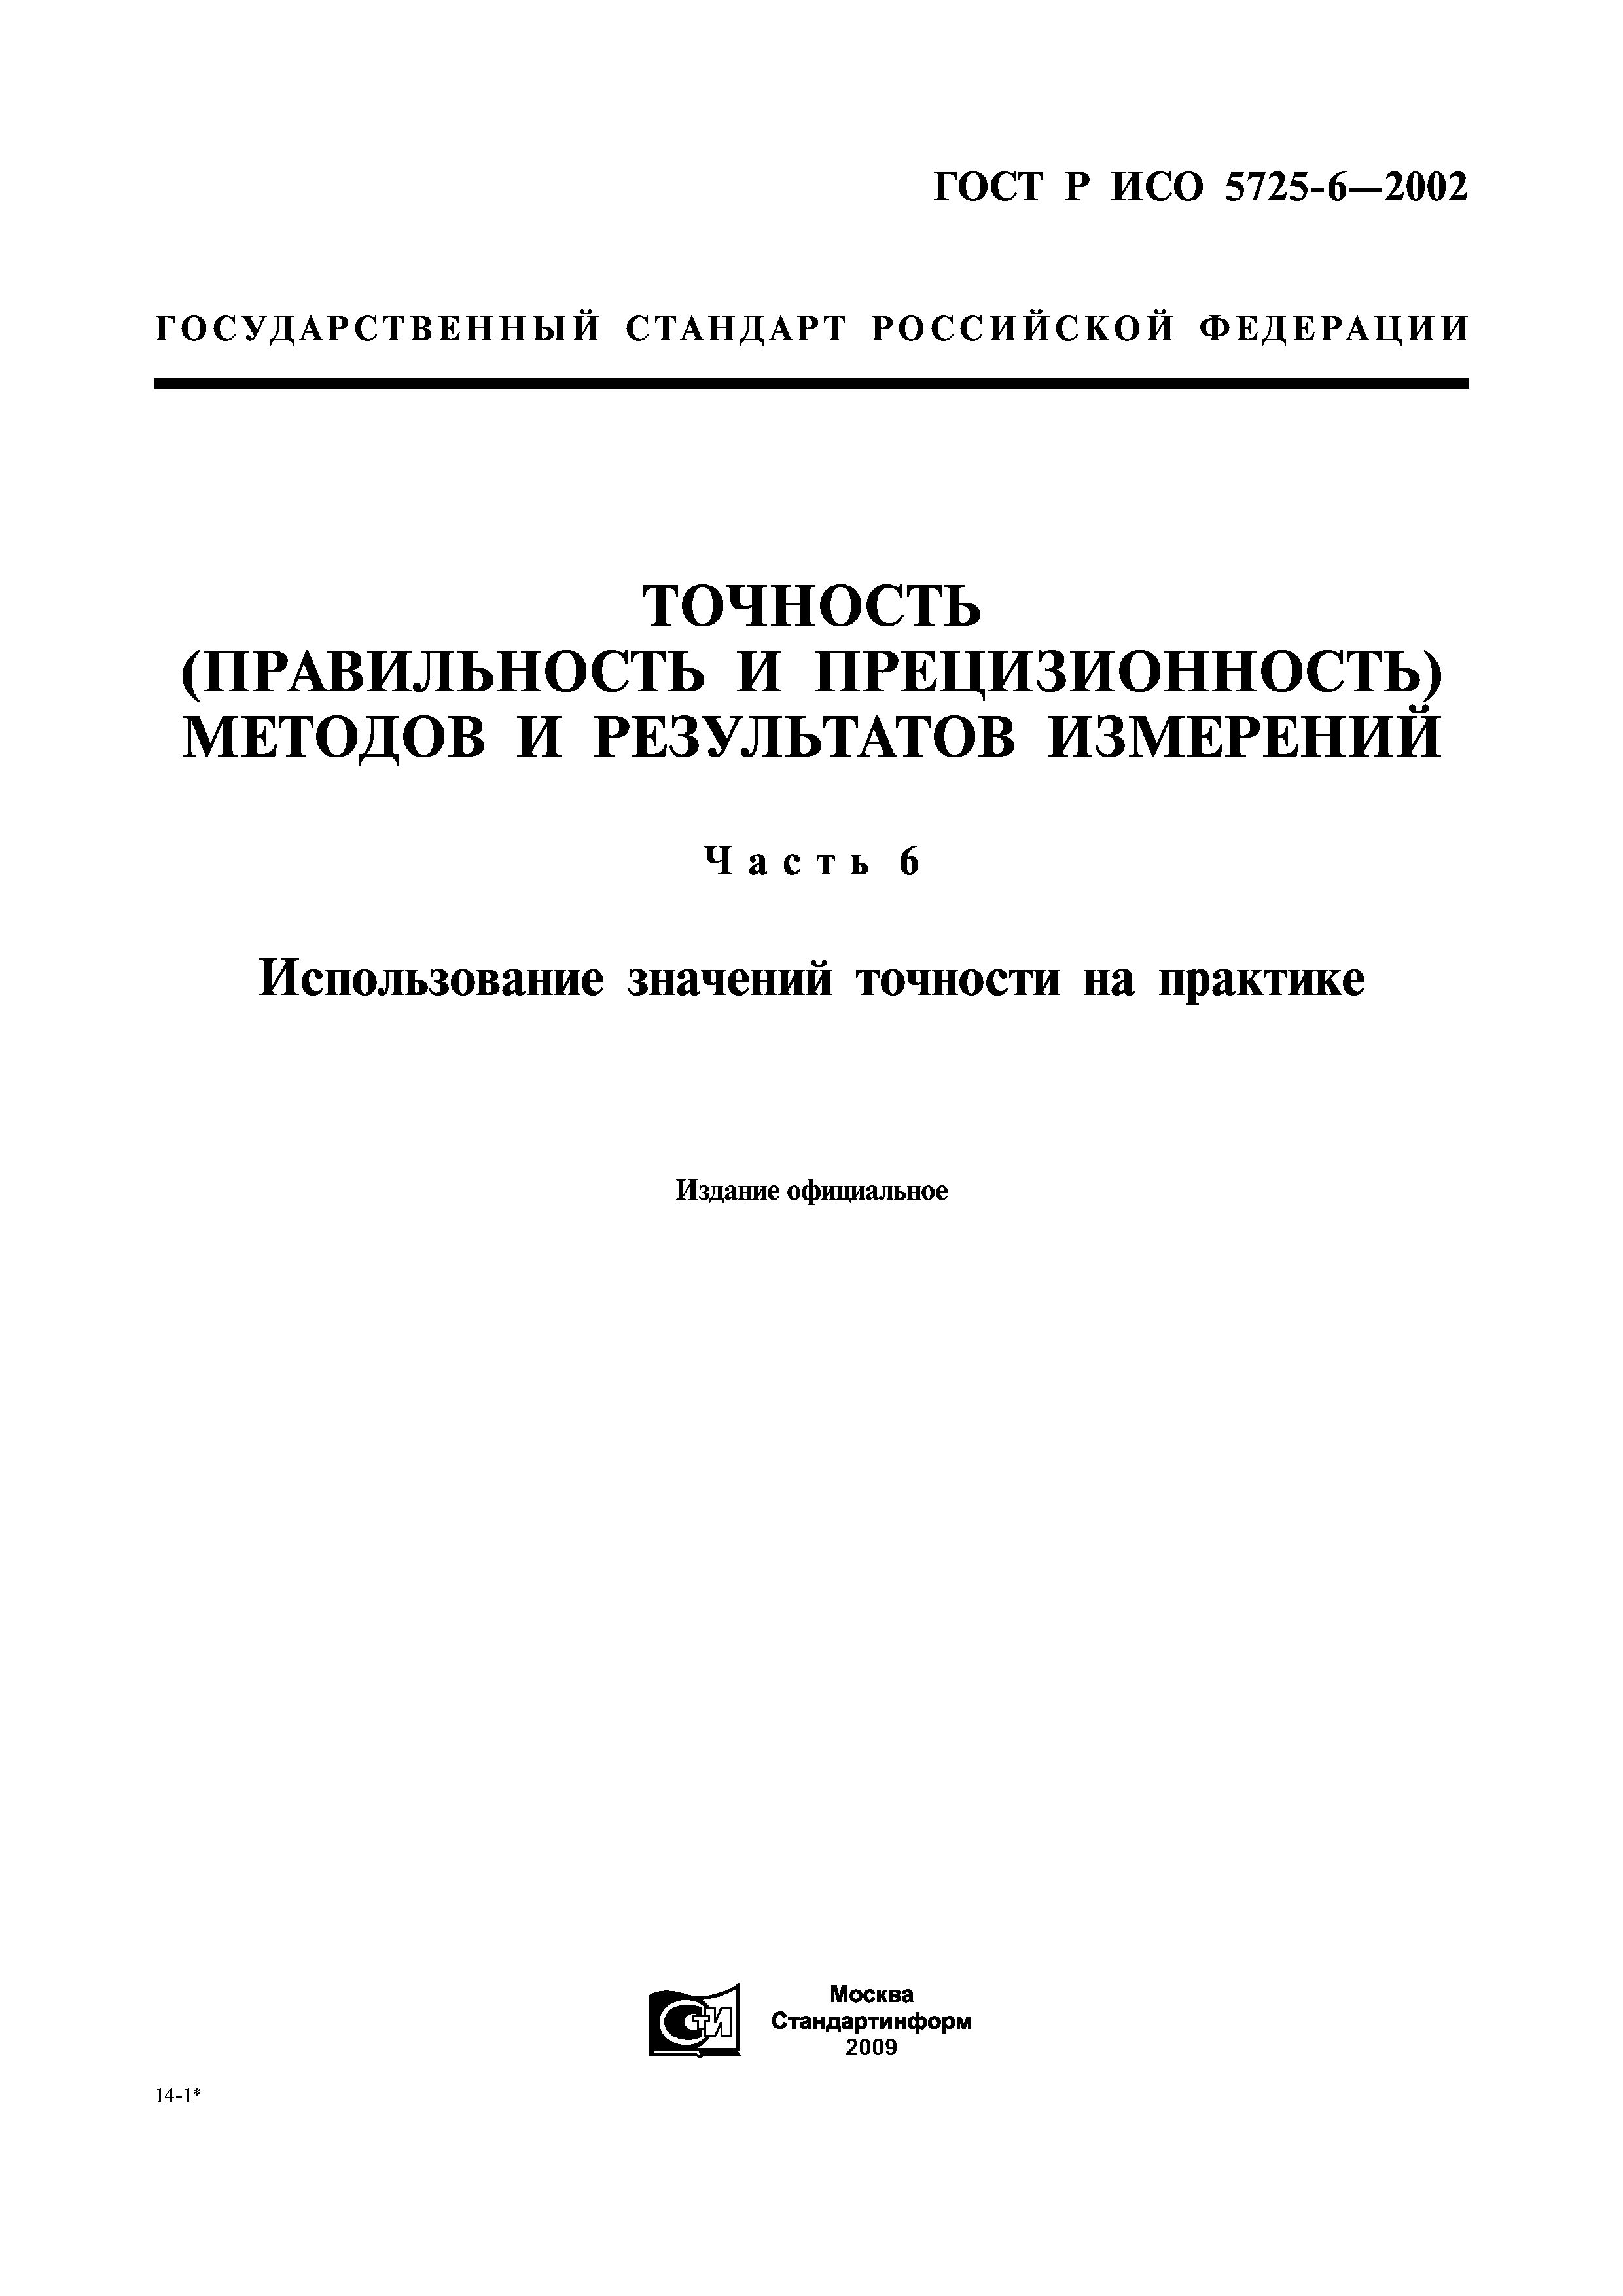 ГОСТ Р ИСО 5725-6-2002